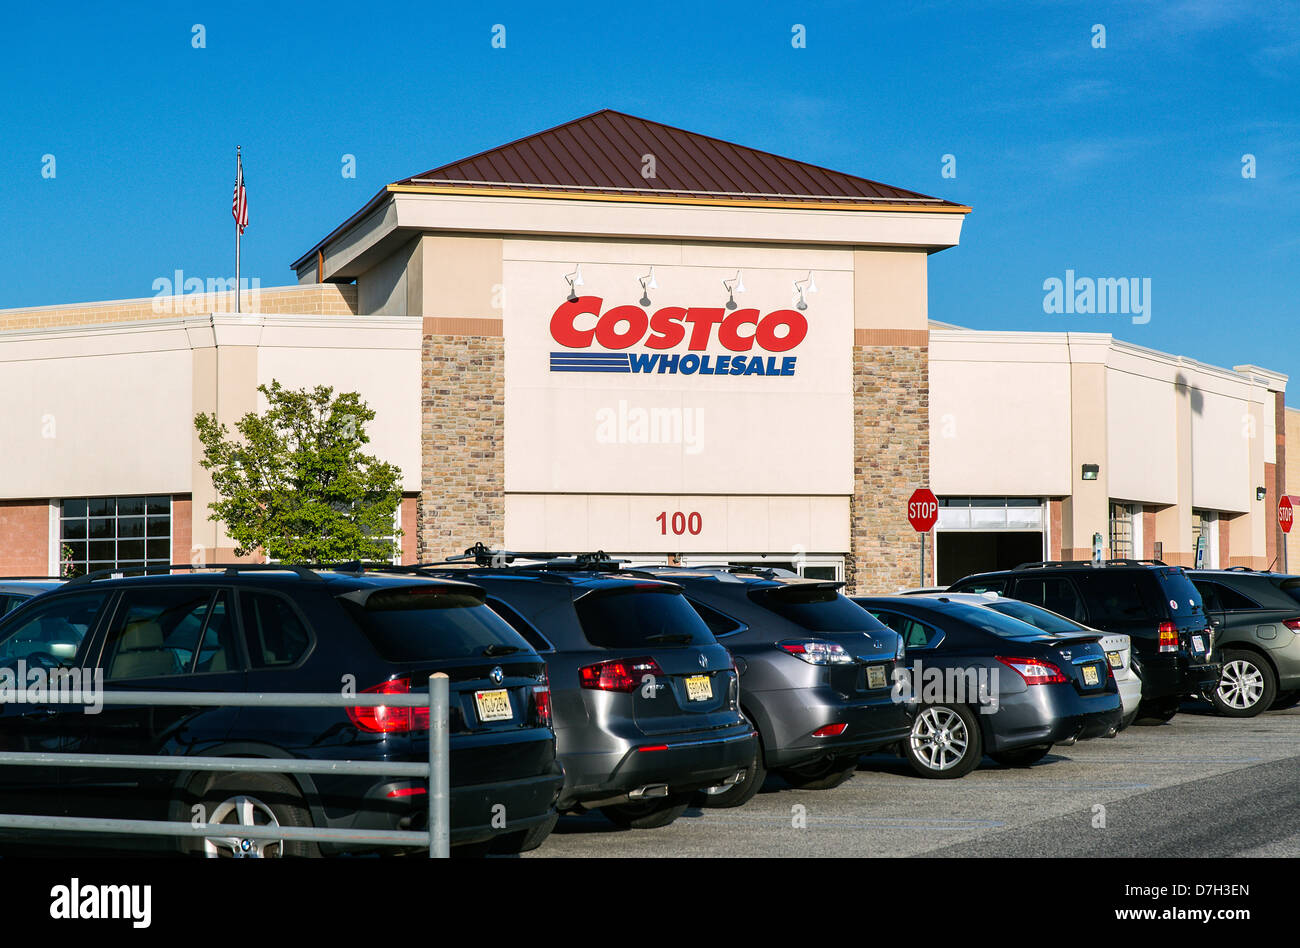 La tienda Costco, Nueva Jersey, EE.UU Fotografía de stock - Alamy